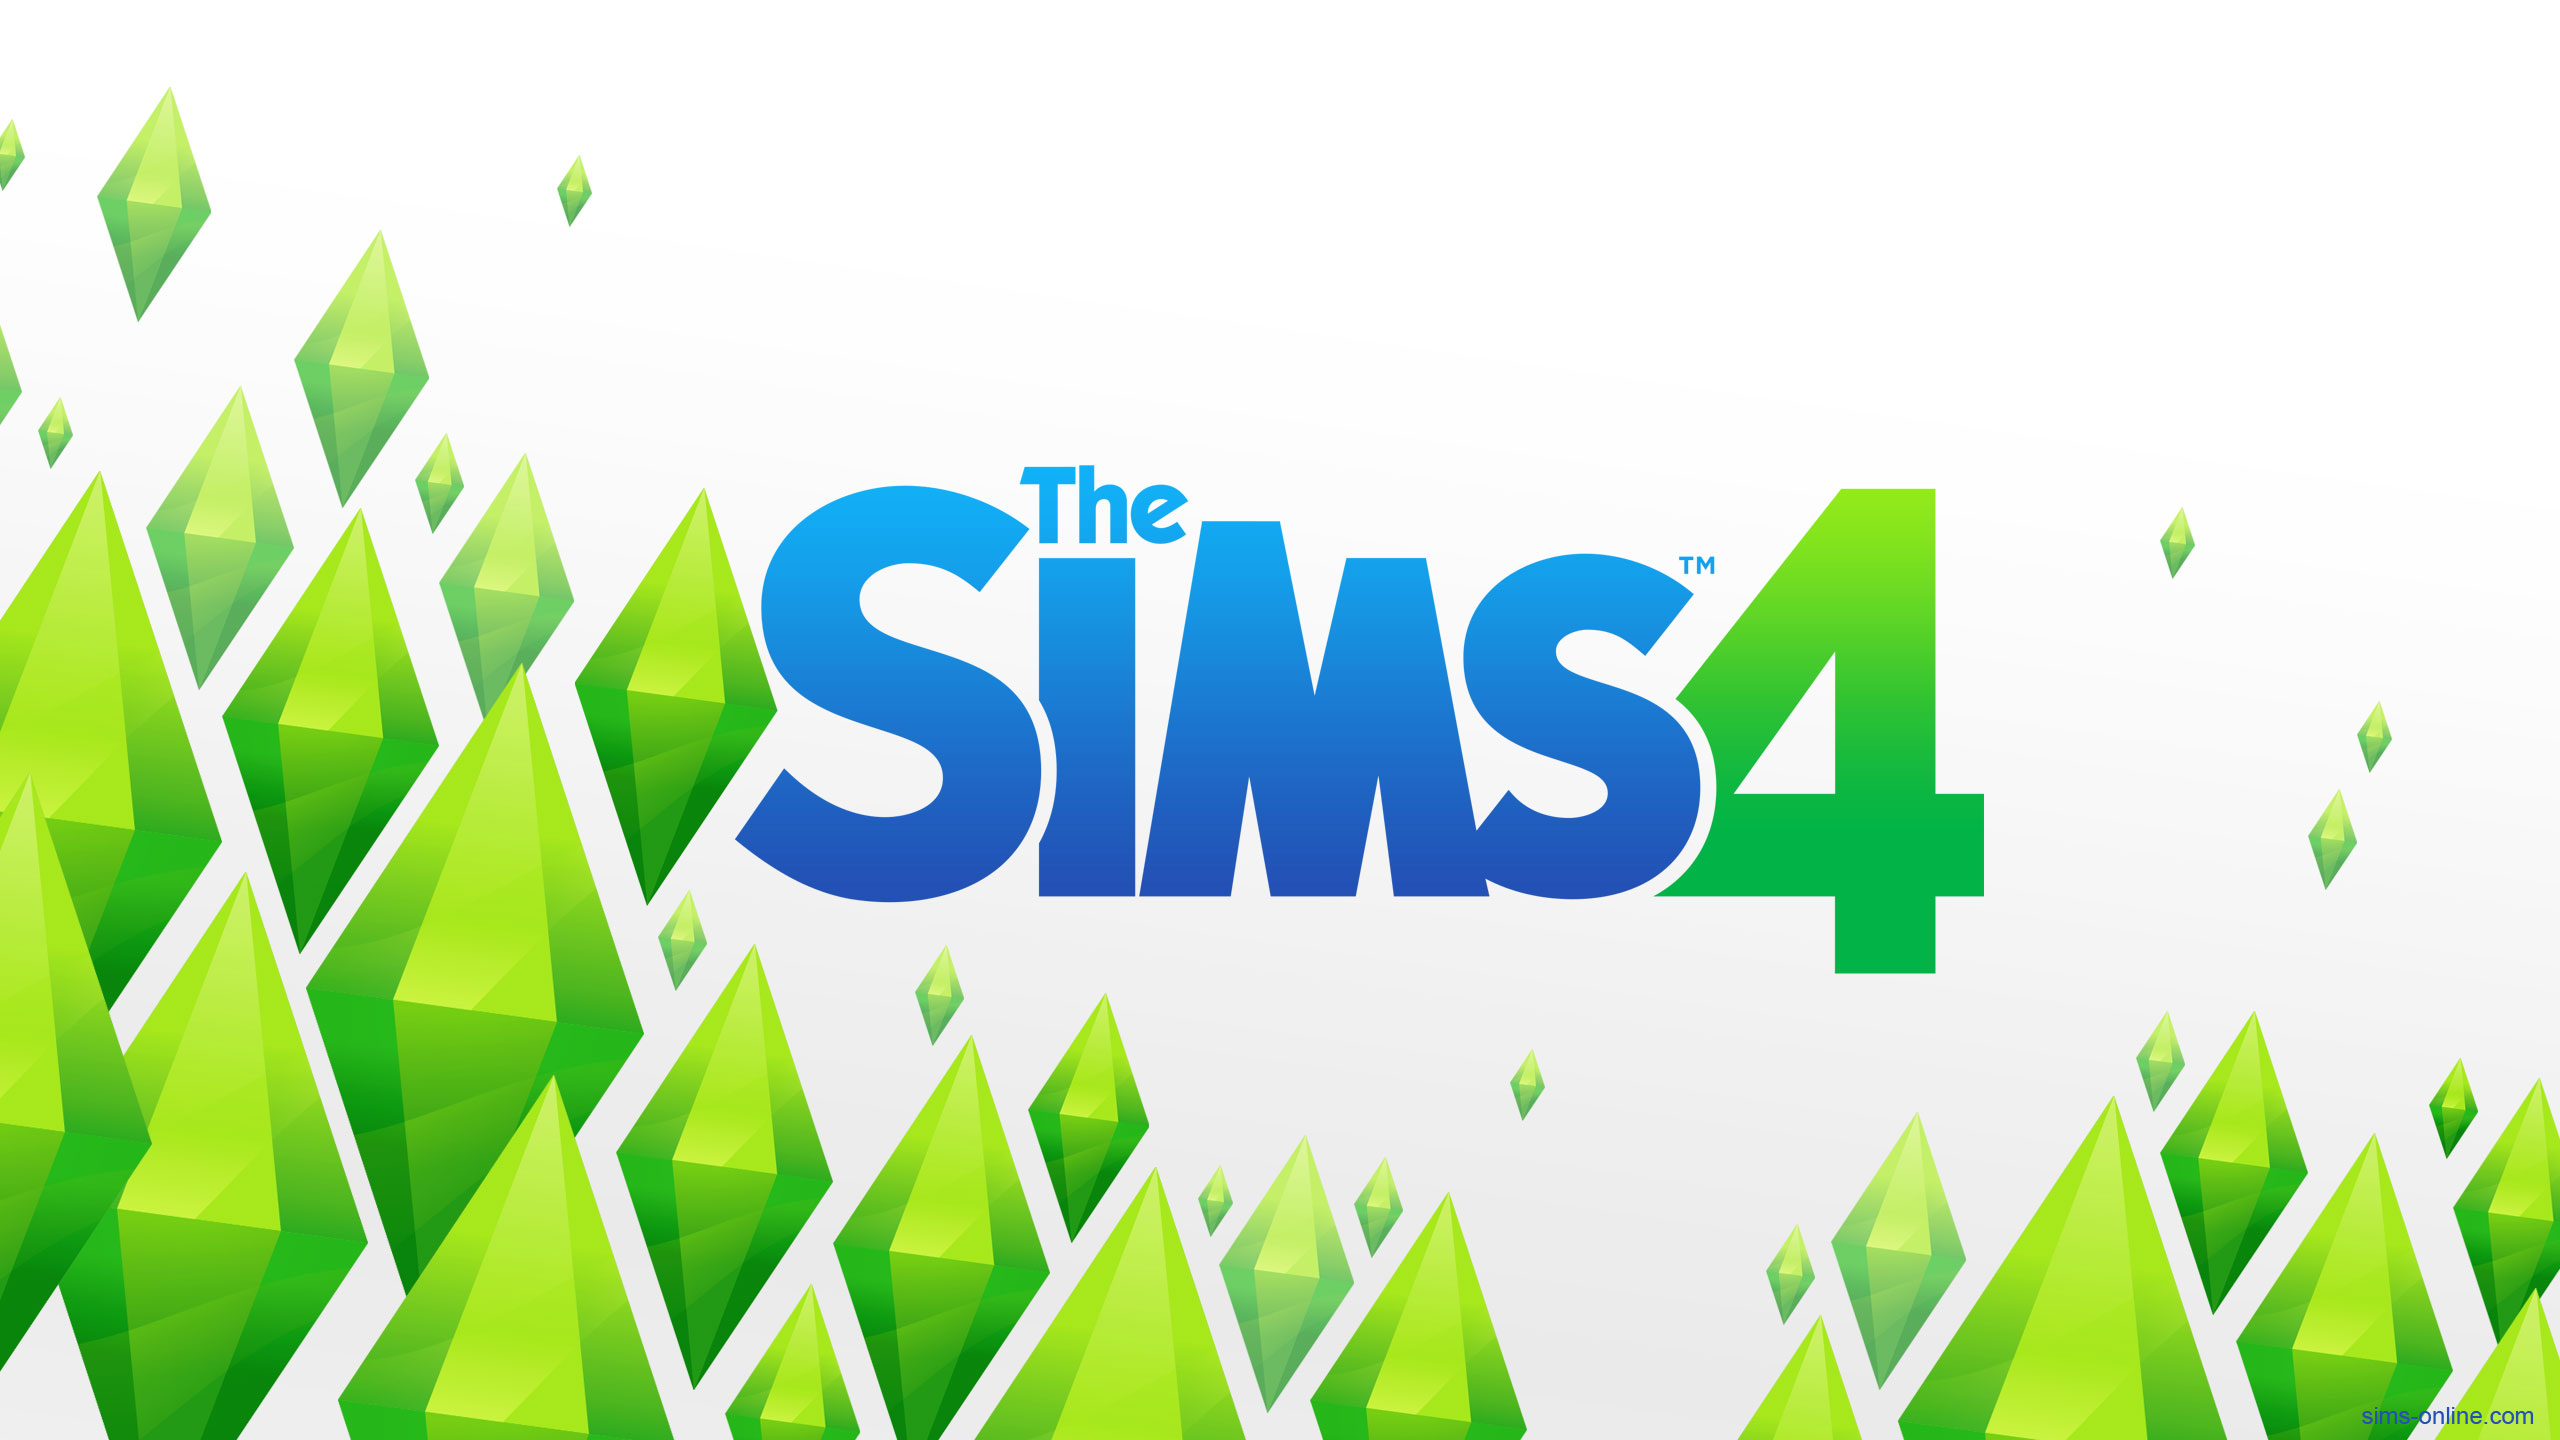 Sims 4 Samsung